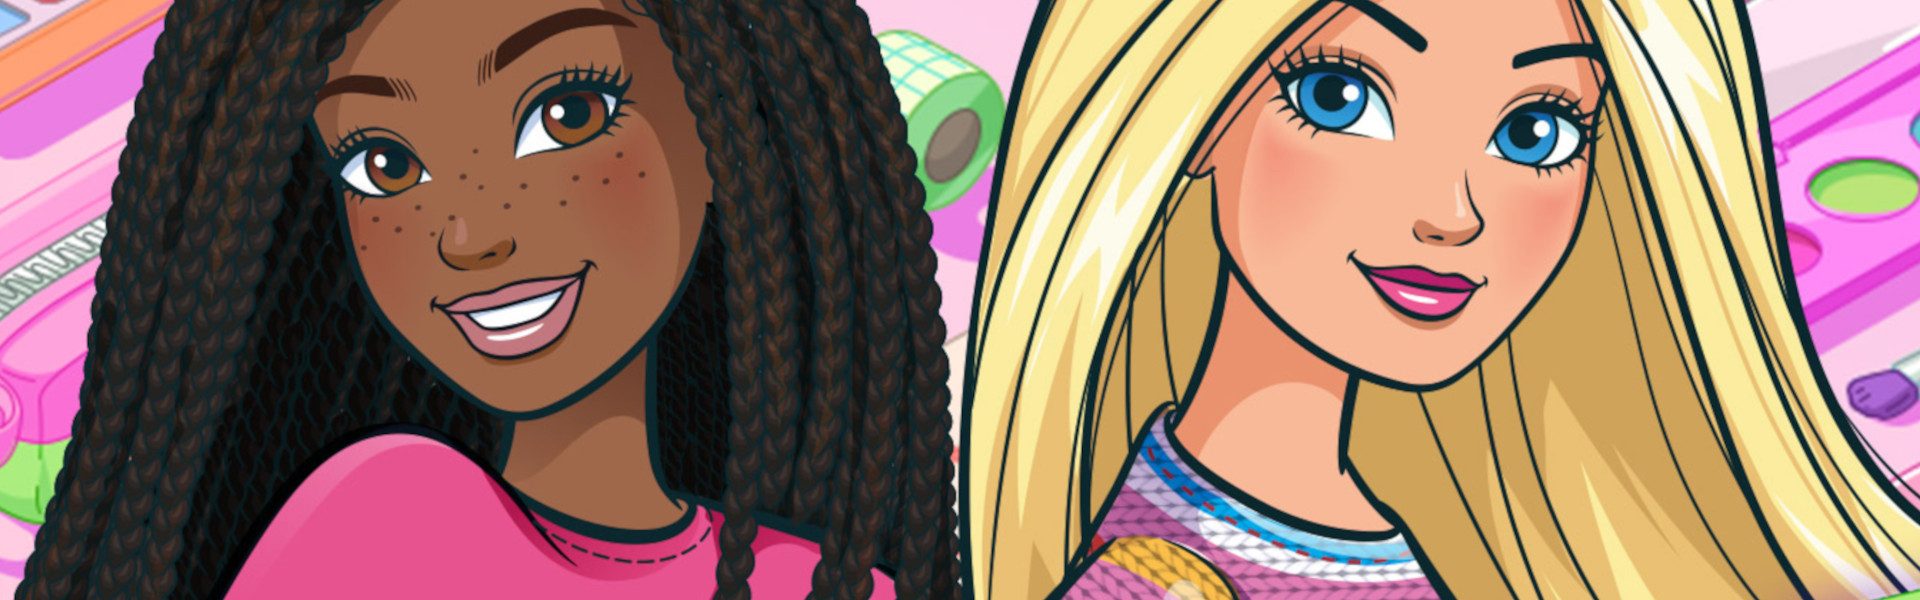 Data premiery Barbie Color Creations pozwala namalować własny Dreamhouse